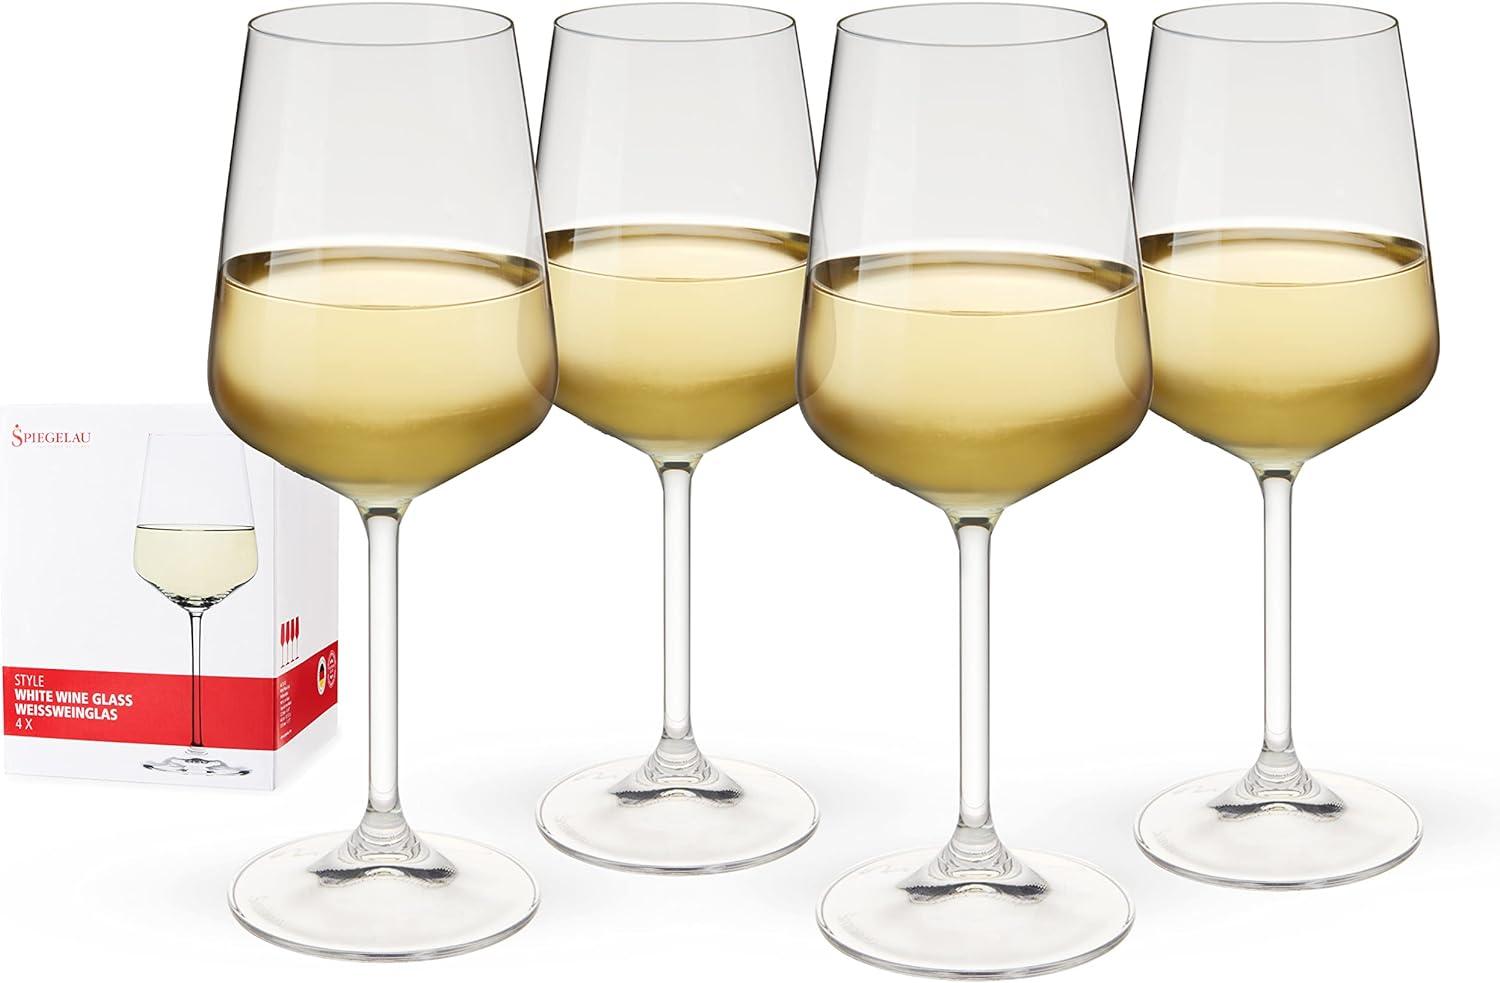 Spiegelau Style Weißweinglas, 4er Set, Weinglas, Weißweinkelch, Weinkelch, Kristallglas, 440 ml, 4670182 Bild 1